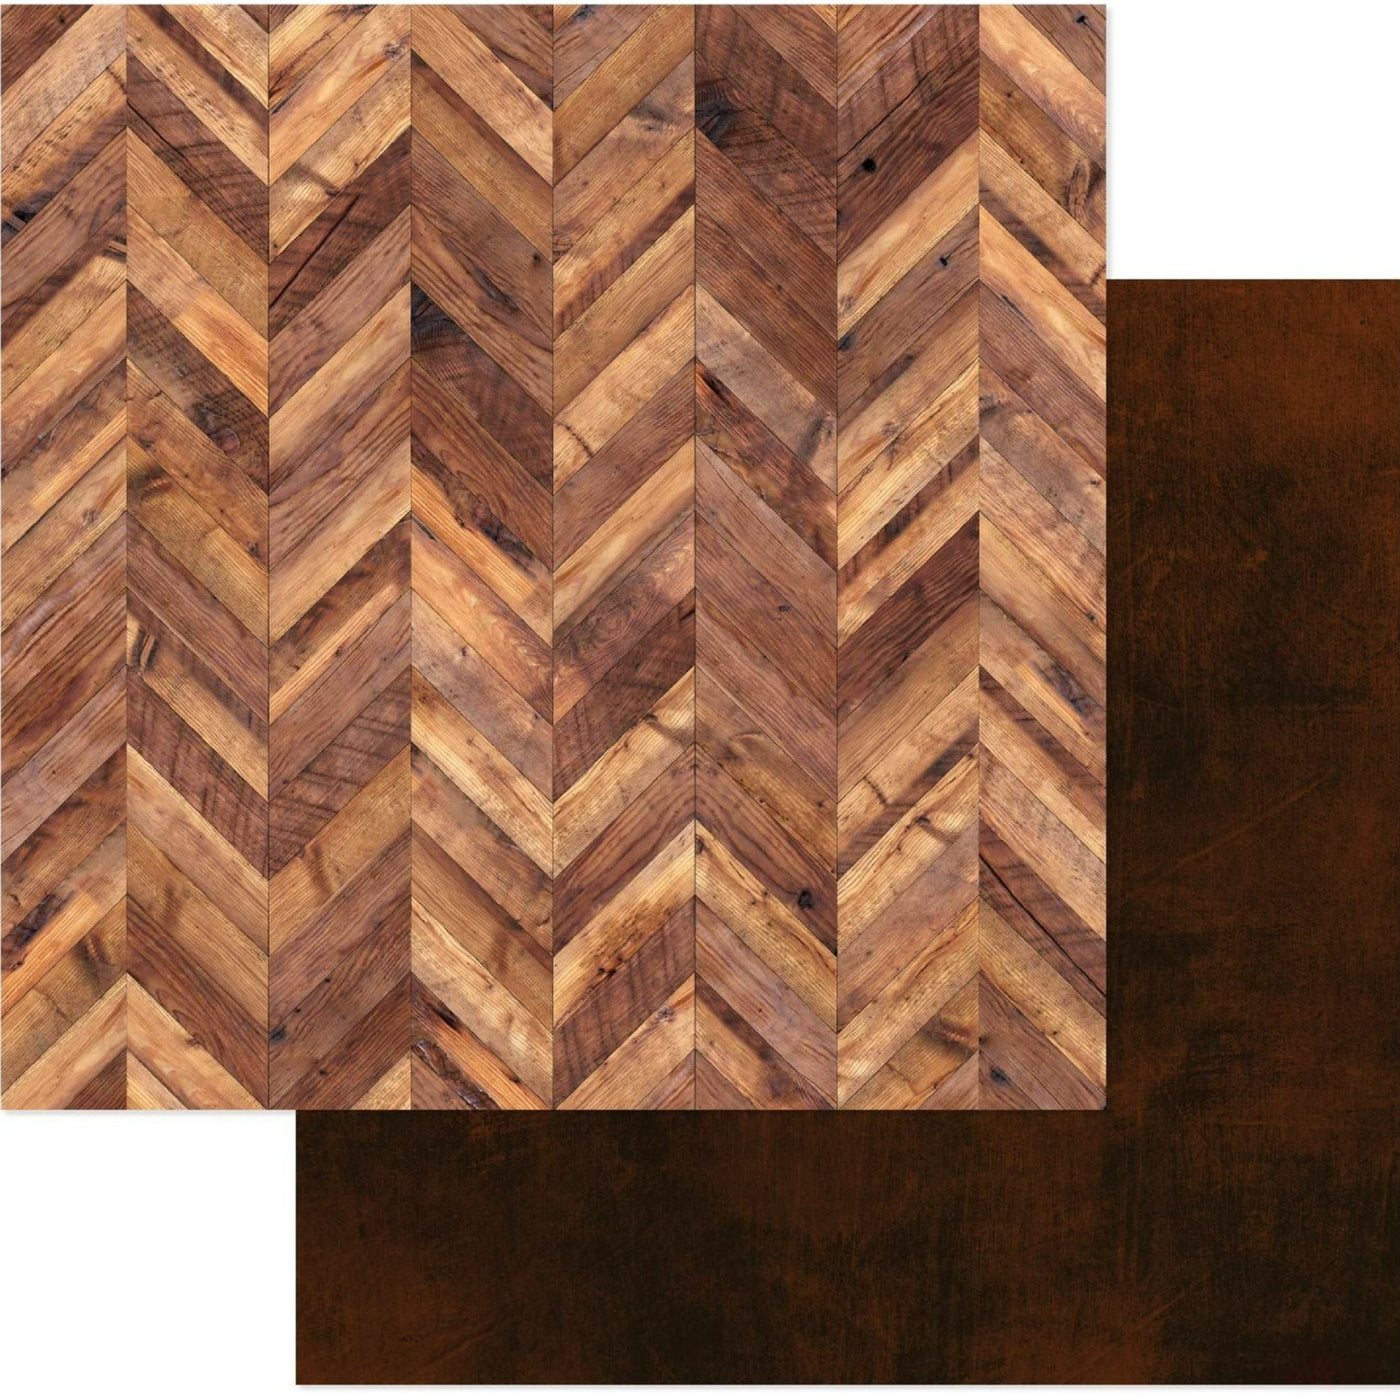 It is printed on two sides. (Side A- rows of herringbone wood pattern, Side B - dark wood planks) Acid-free.